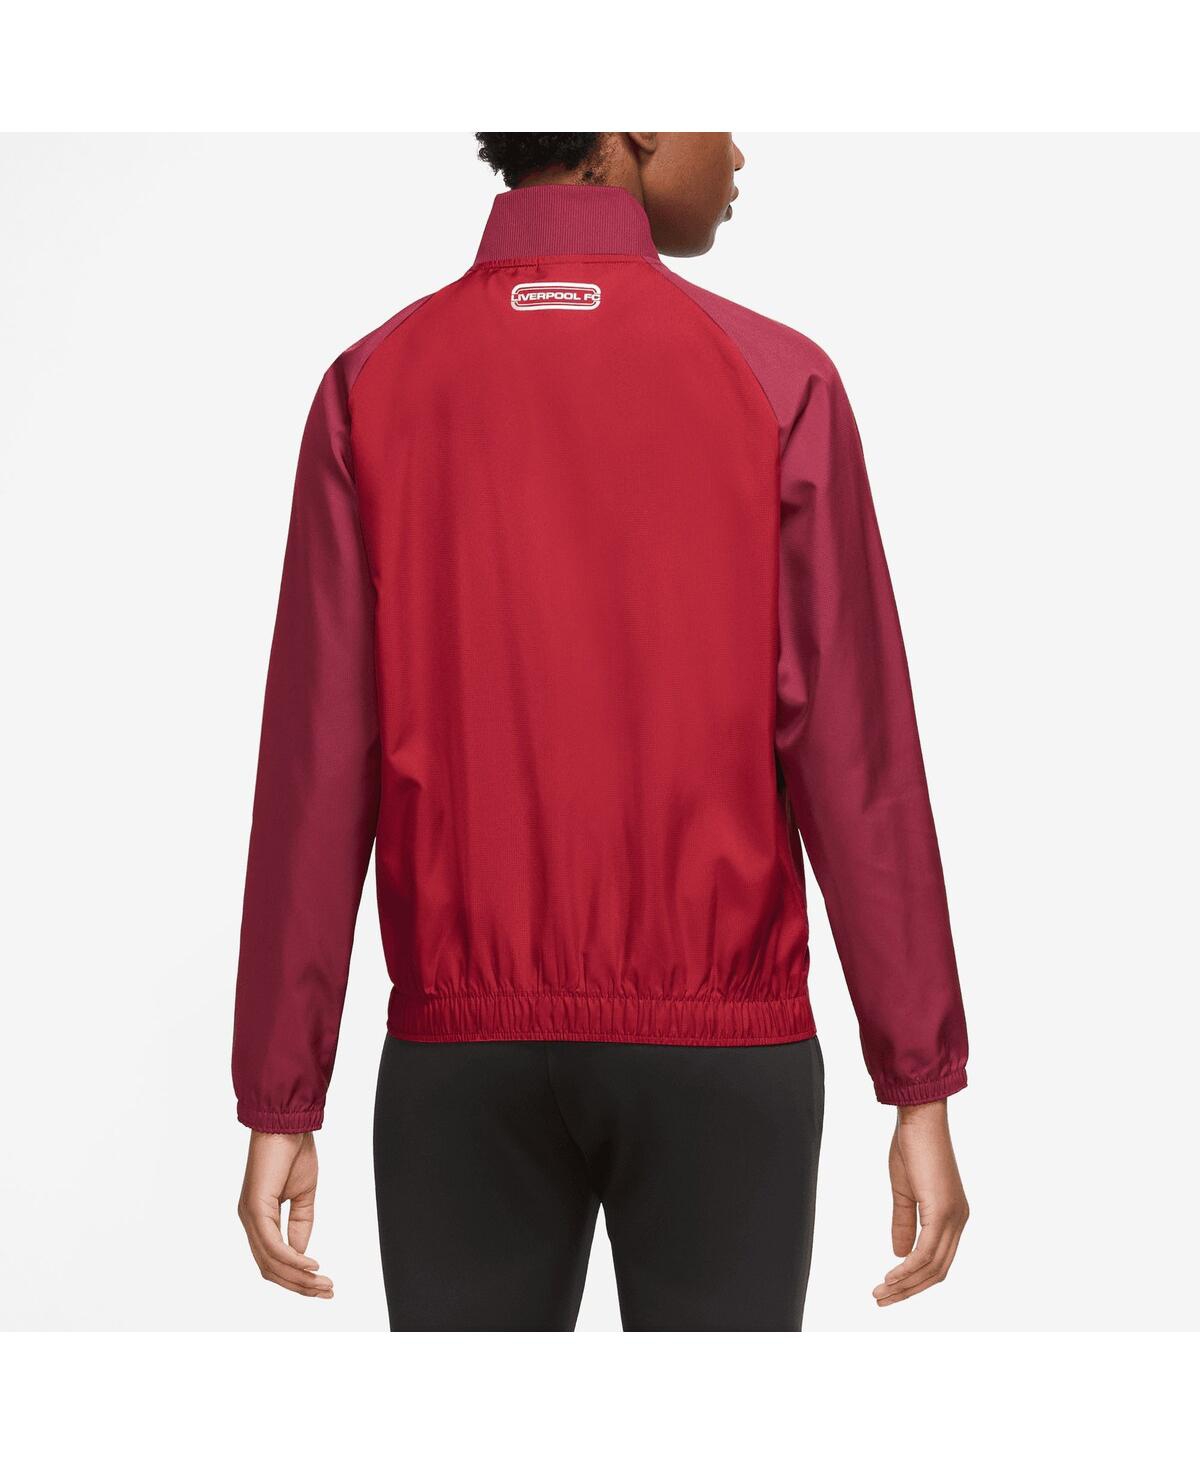 Shop Nike Women's  Red Liverpool Anthem Raglan Performance Full-zip Jacket